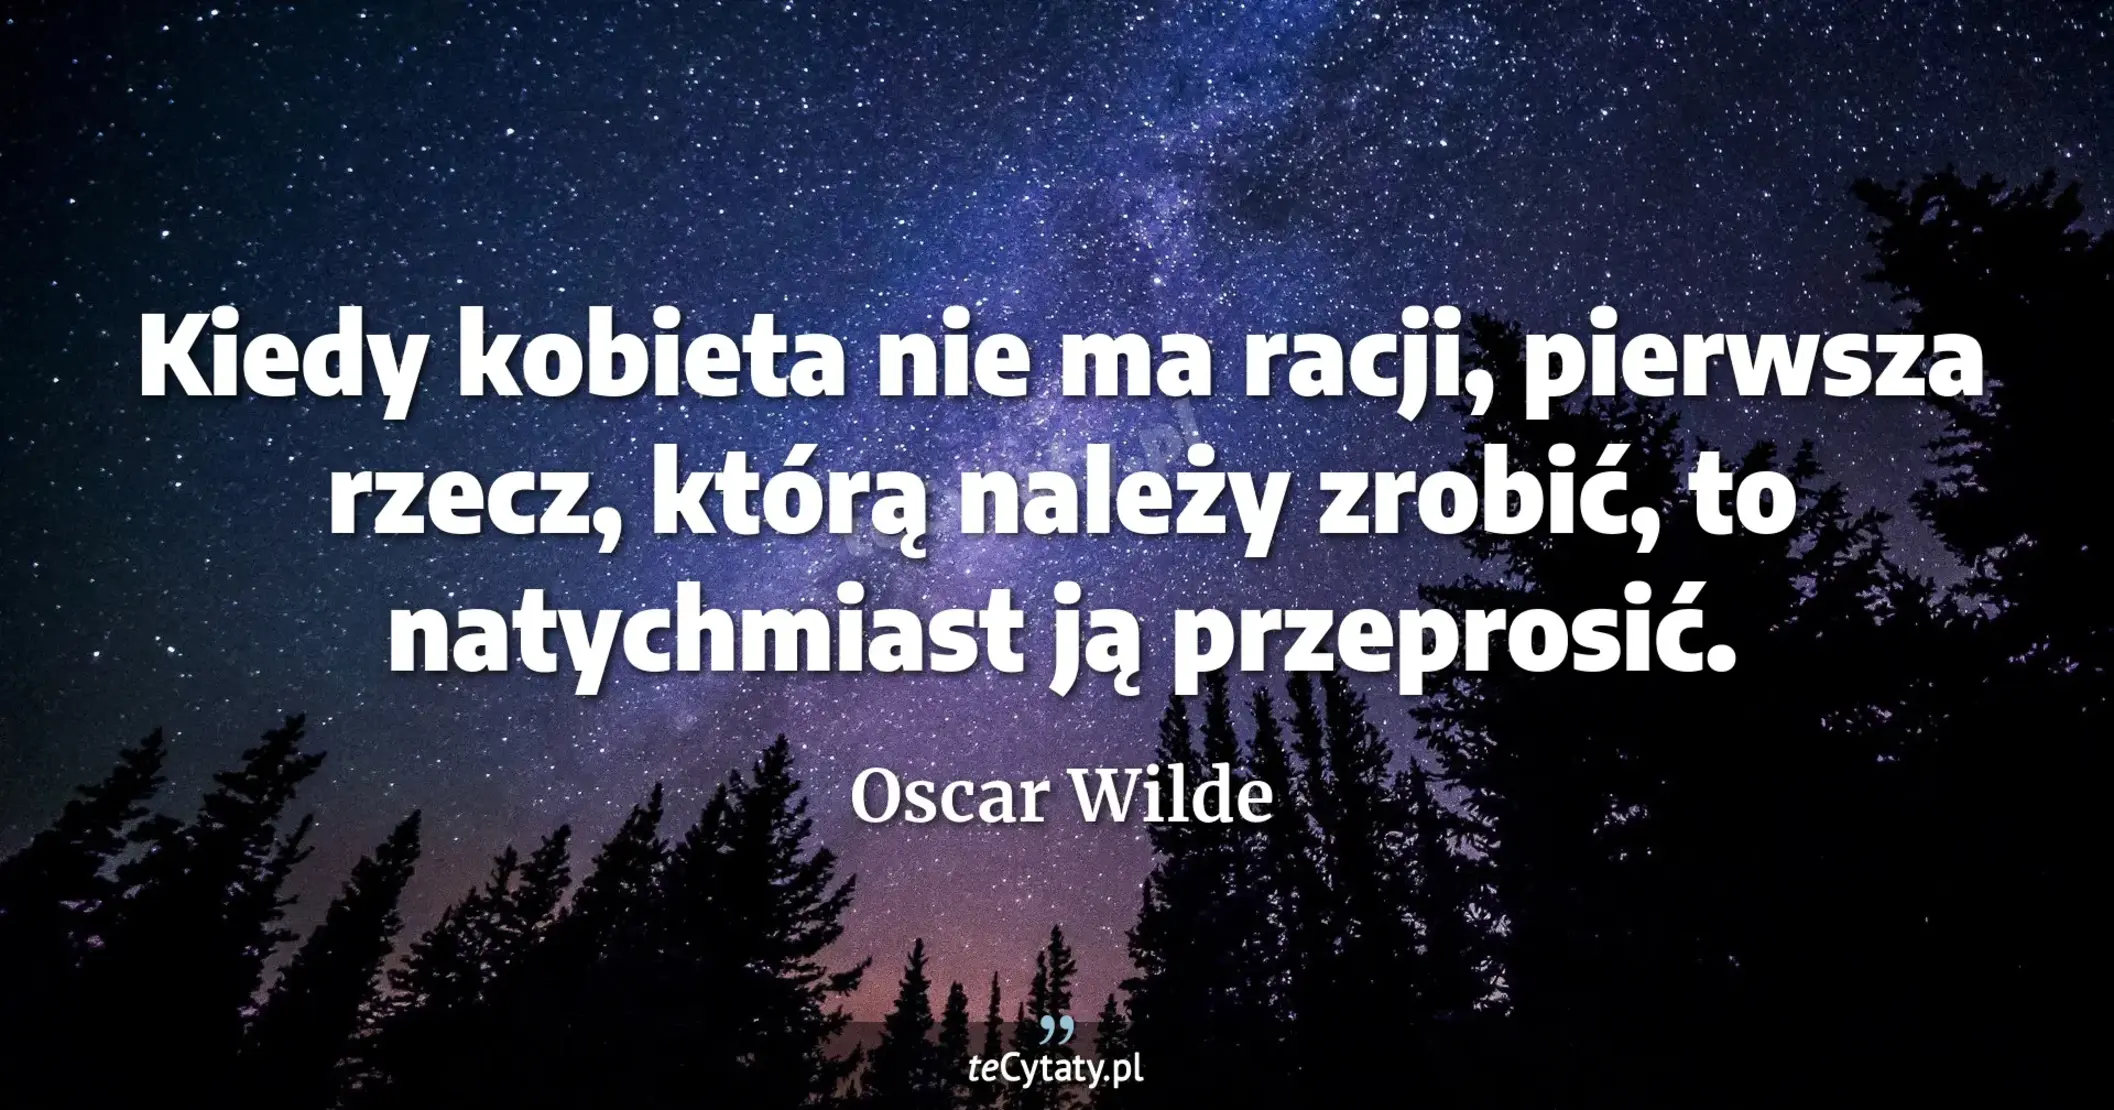 Kiedy kobieta nie ma racji, pierwsza rzecz, którą należy zrobić, to natychmiast ją przeprosić. - Oscar Wilde